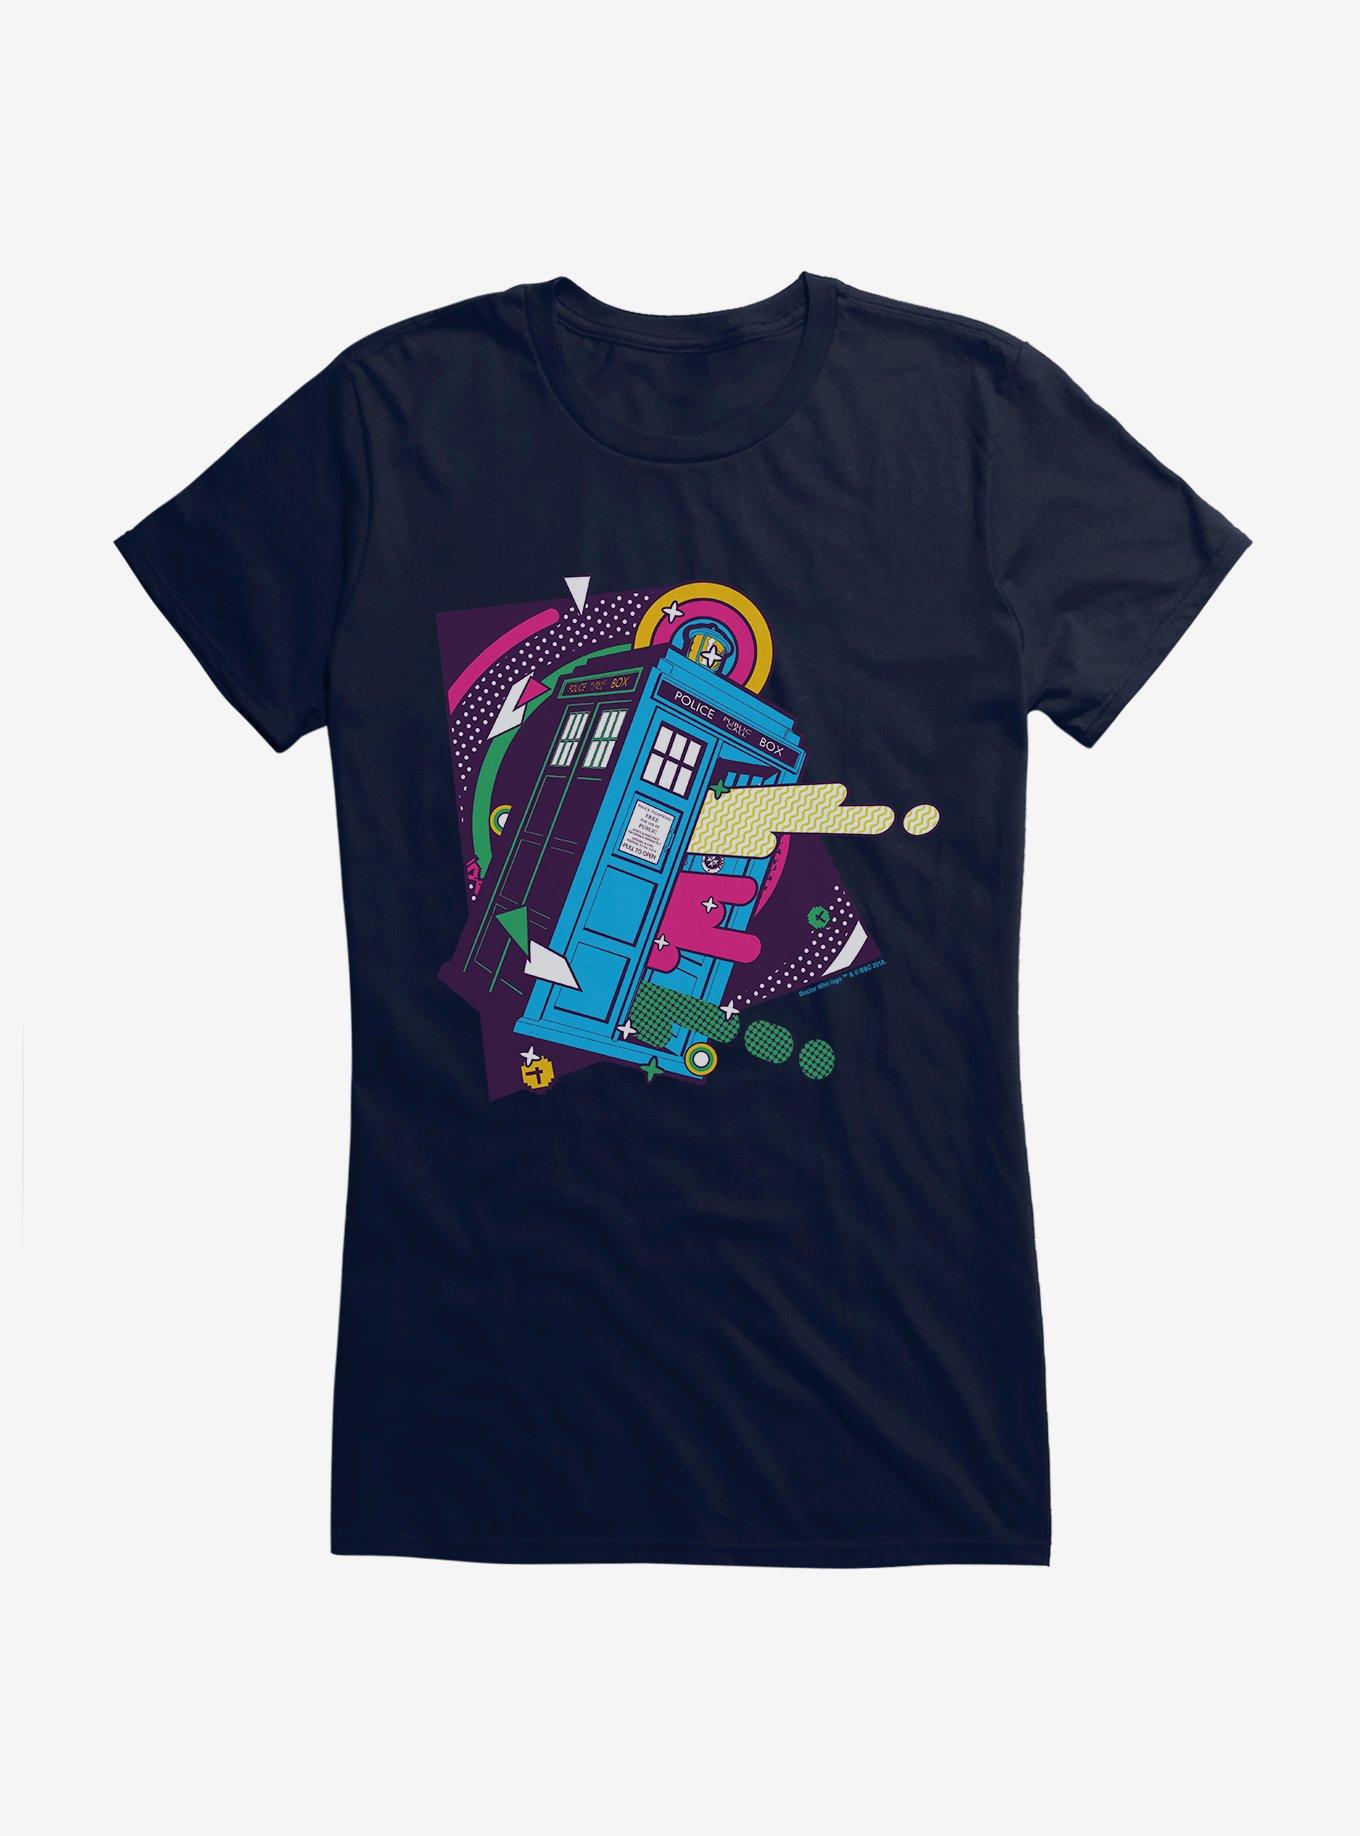 Doctor Who TARDIS Bigger On The Inside Pop Art Girls T-Shirt